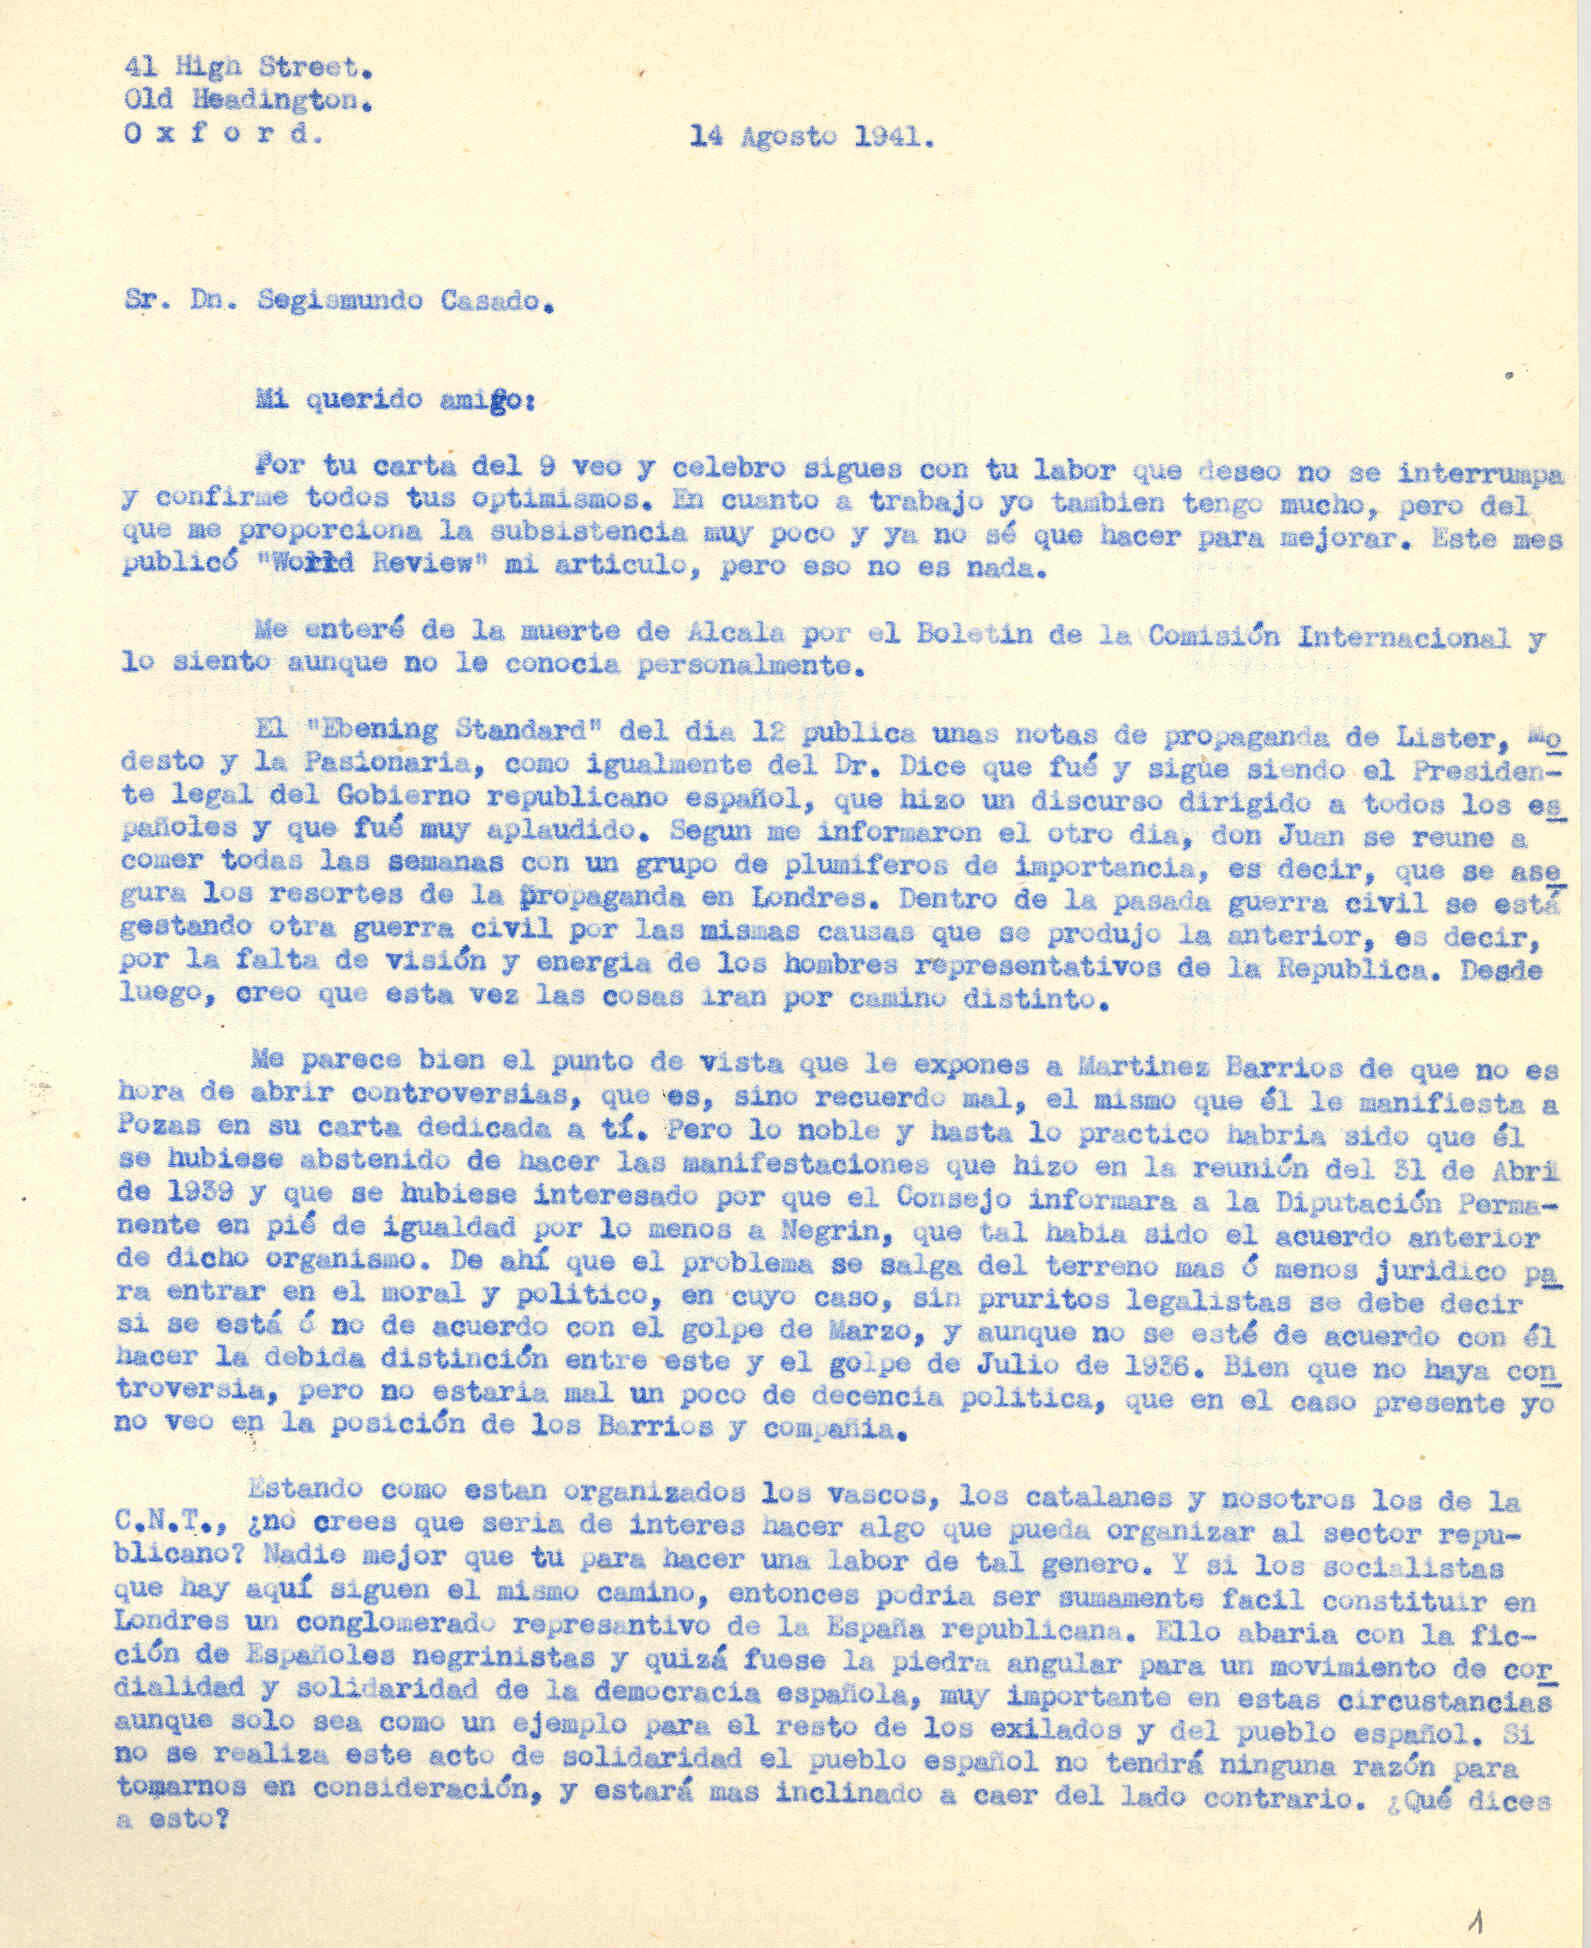 Carta a Segismundo Casado comentado la propaganda que hace Negrín en Londres y propone hacer algo para organizar el sector republicano.